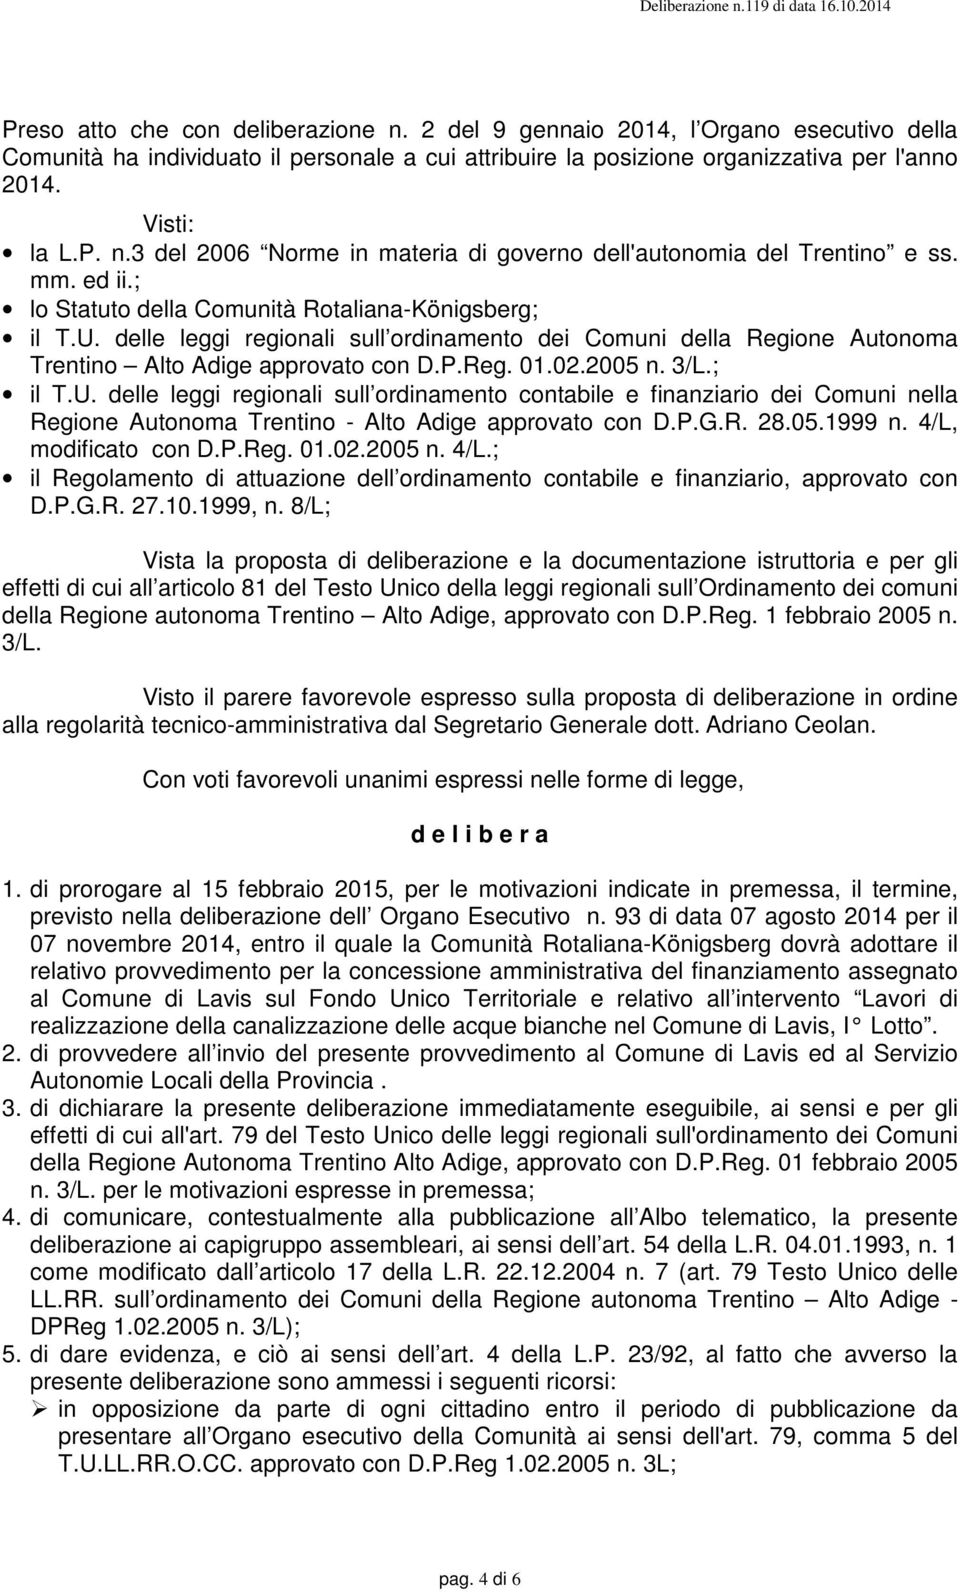 3/L.; il T.U. delle leggi regionali sull ordinamento contabile e finanziario dei Comuni nella Regione Autonoma Trentino - Alto Adige approvato con D.P.G.R. 28.05.1999 n. 4/L, modificato con D.P.Reg. 01.